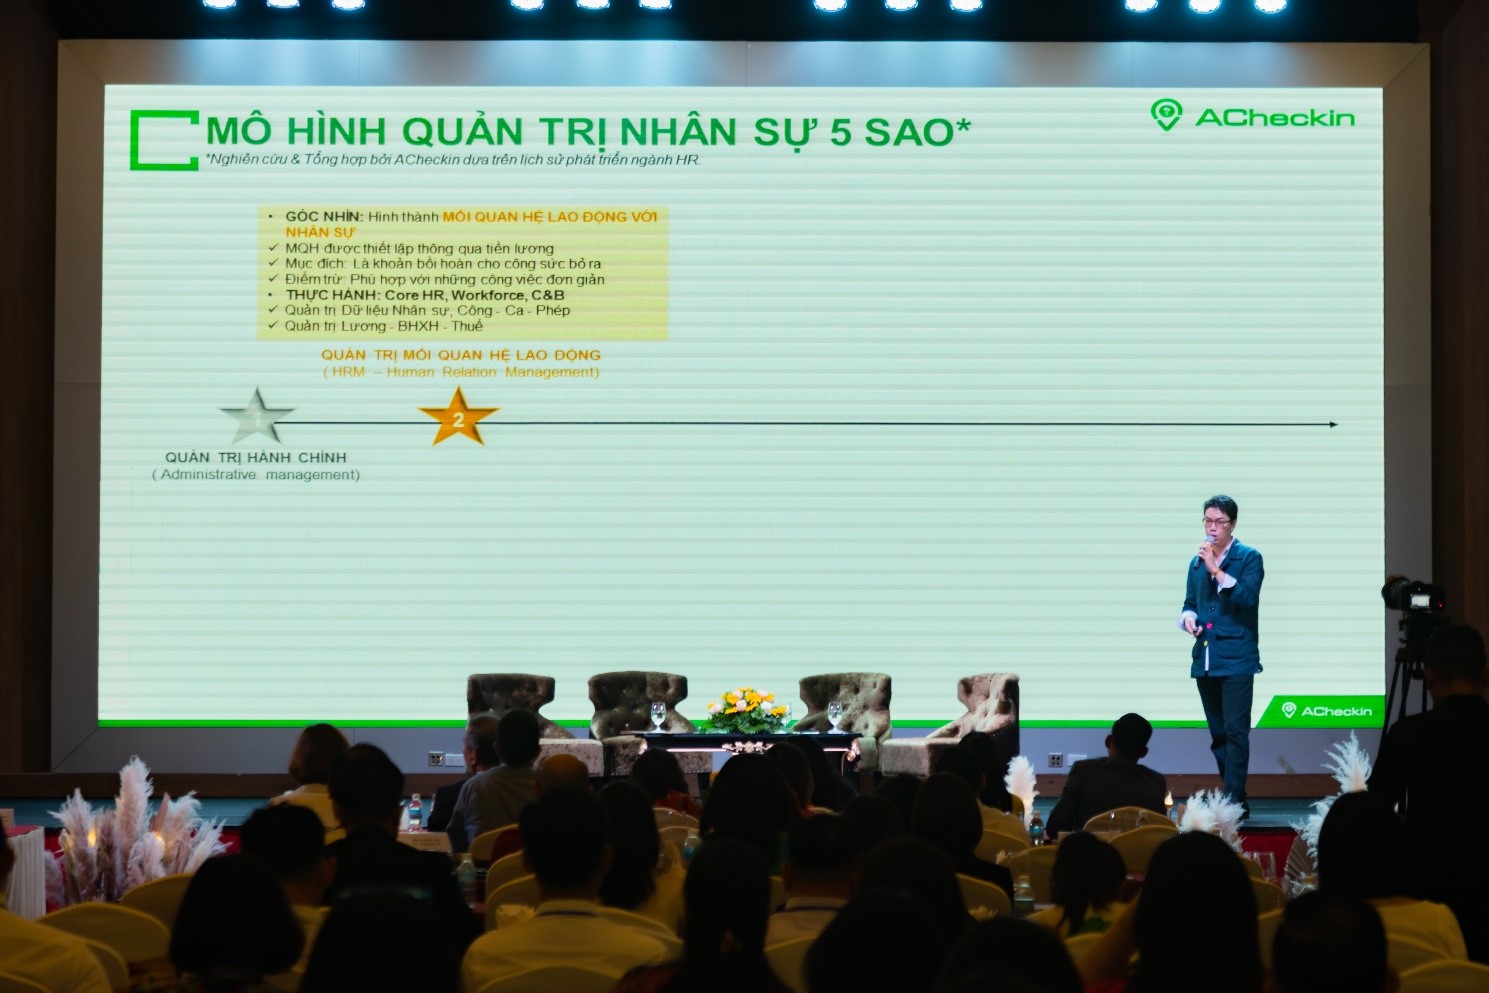 Mr. Nguyễn Nhật Tuấn – CEO Acheckin, chia sẻ về phần Mềm quản lý Nhân sự góp phần kiến tạo trải nghiệm nhân viên, tăng cường sự gắn kết với Doanh nghiệp, nâng cao hiệu suất lao động và chất lượng dịch vụ - xu hướng quản trị nguồn nhân lực